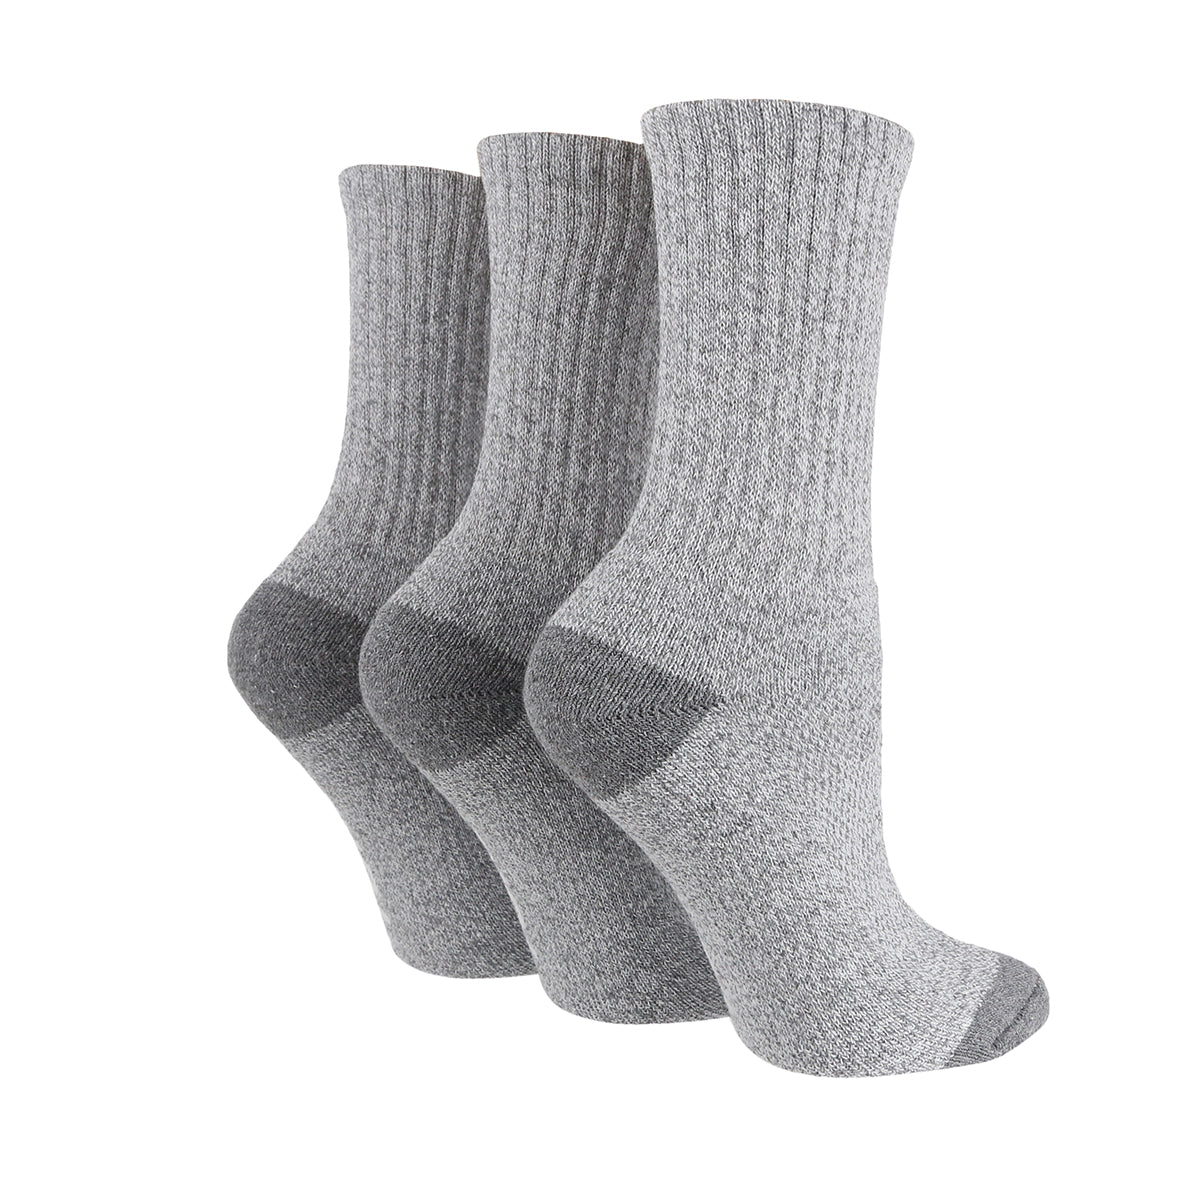 Women's Boot Socks - 3 Pairs